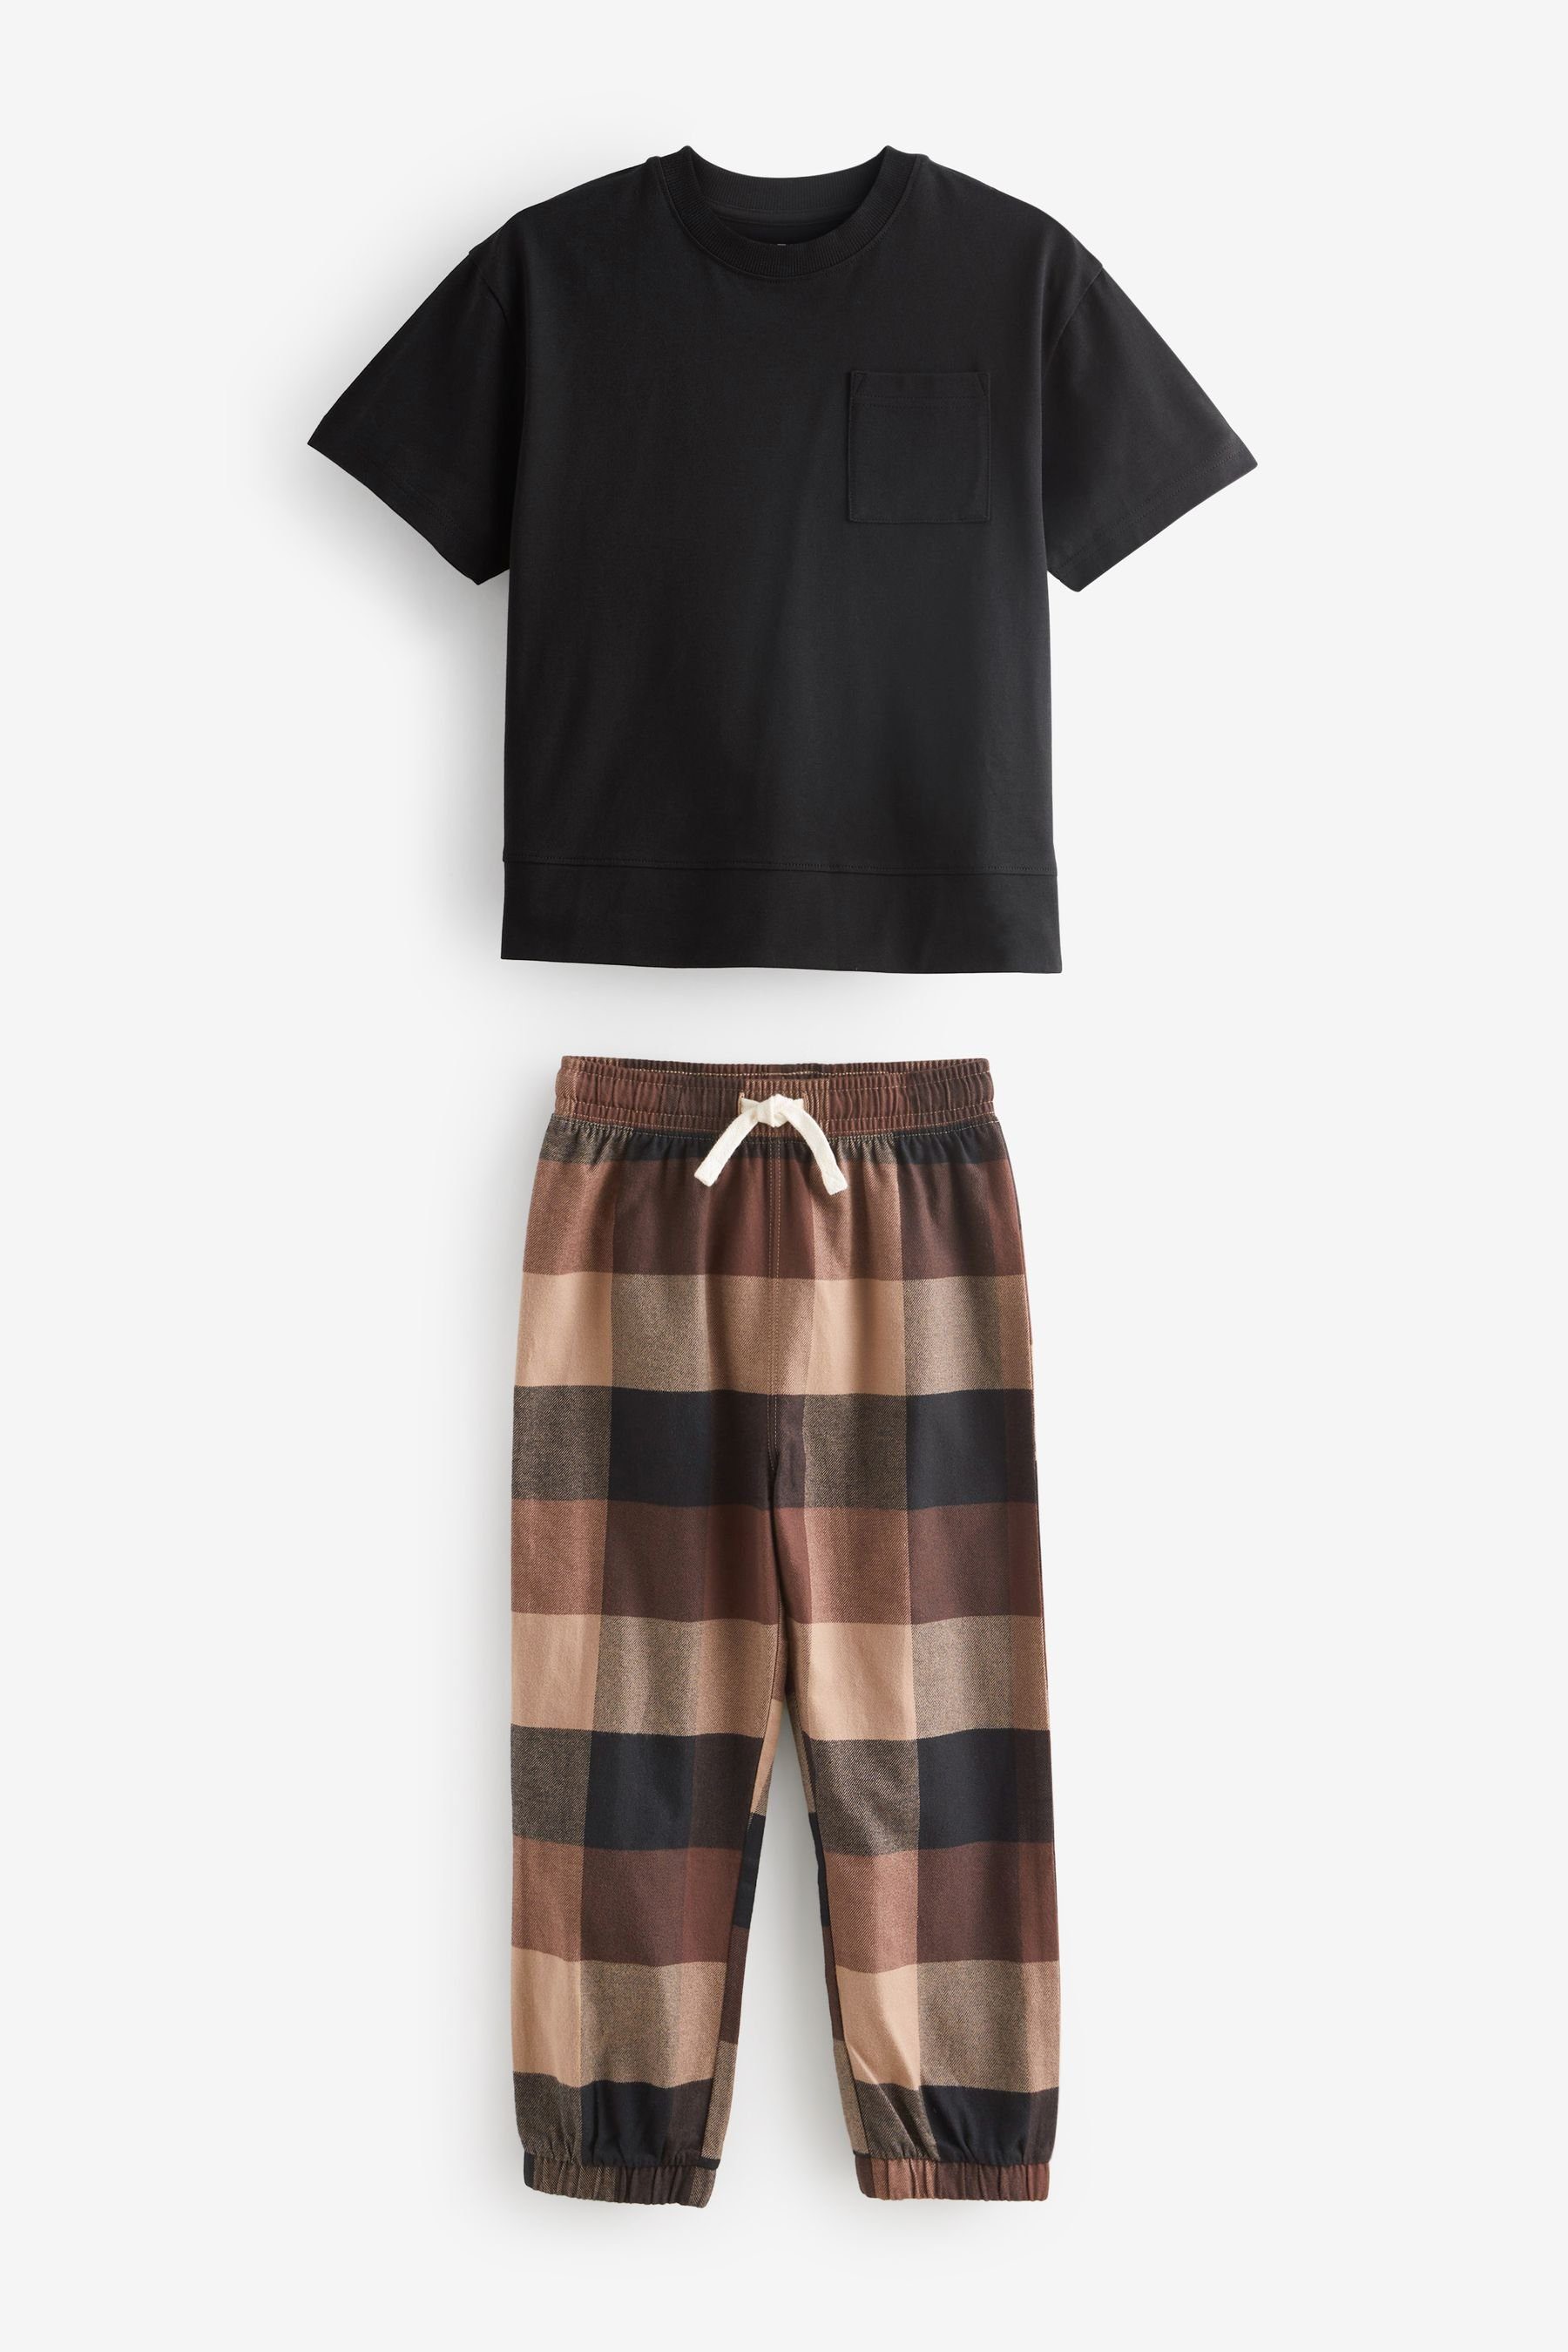 Next Pyjama Pyjamas 2er-Pack Chocolate Brown/Black (4 Check tlg) Bottom im